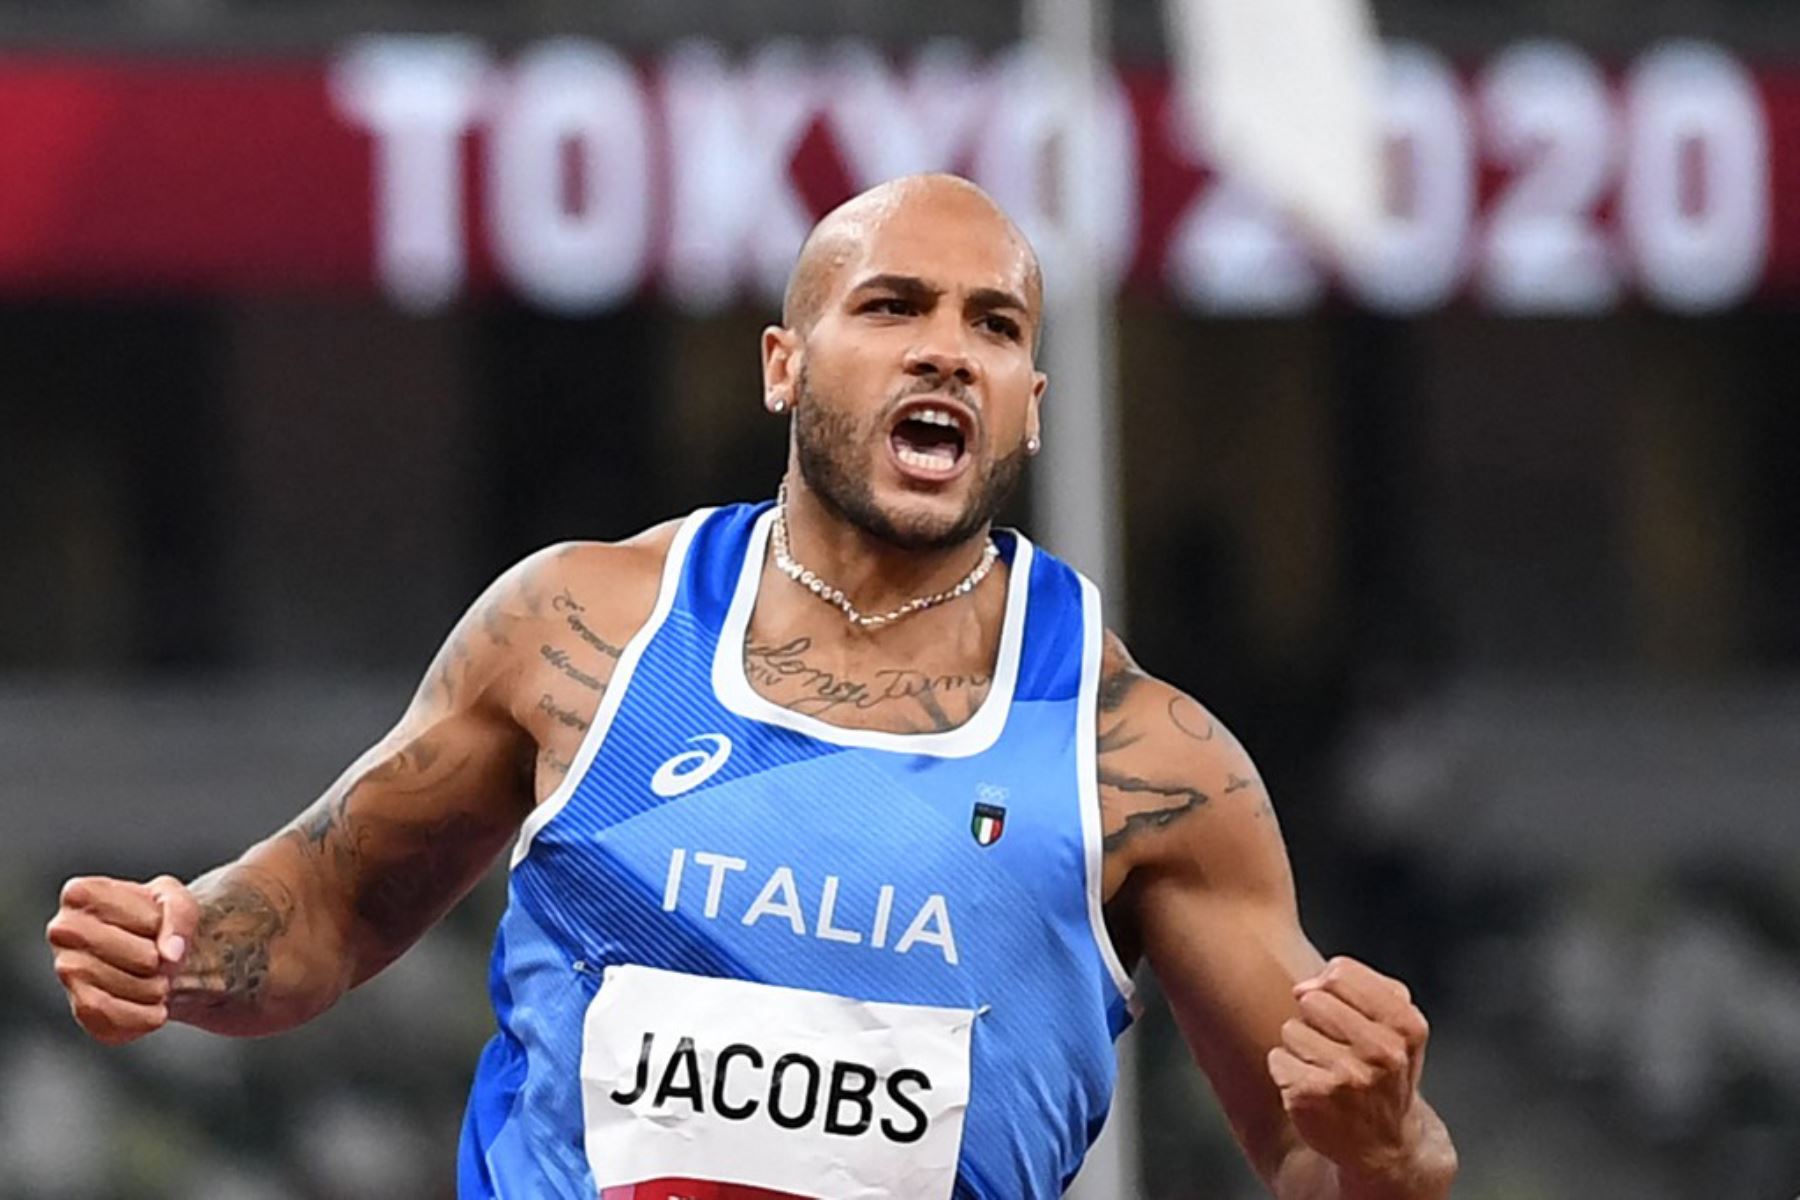 El italiano Lamont Marcell Jacobs celebra su victoria en la final masculina de los 100 metros durante los Juegos Olímpicos de Tokio.

Foto: AFP